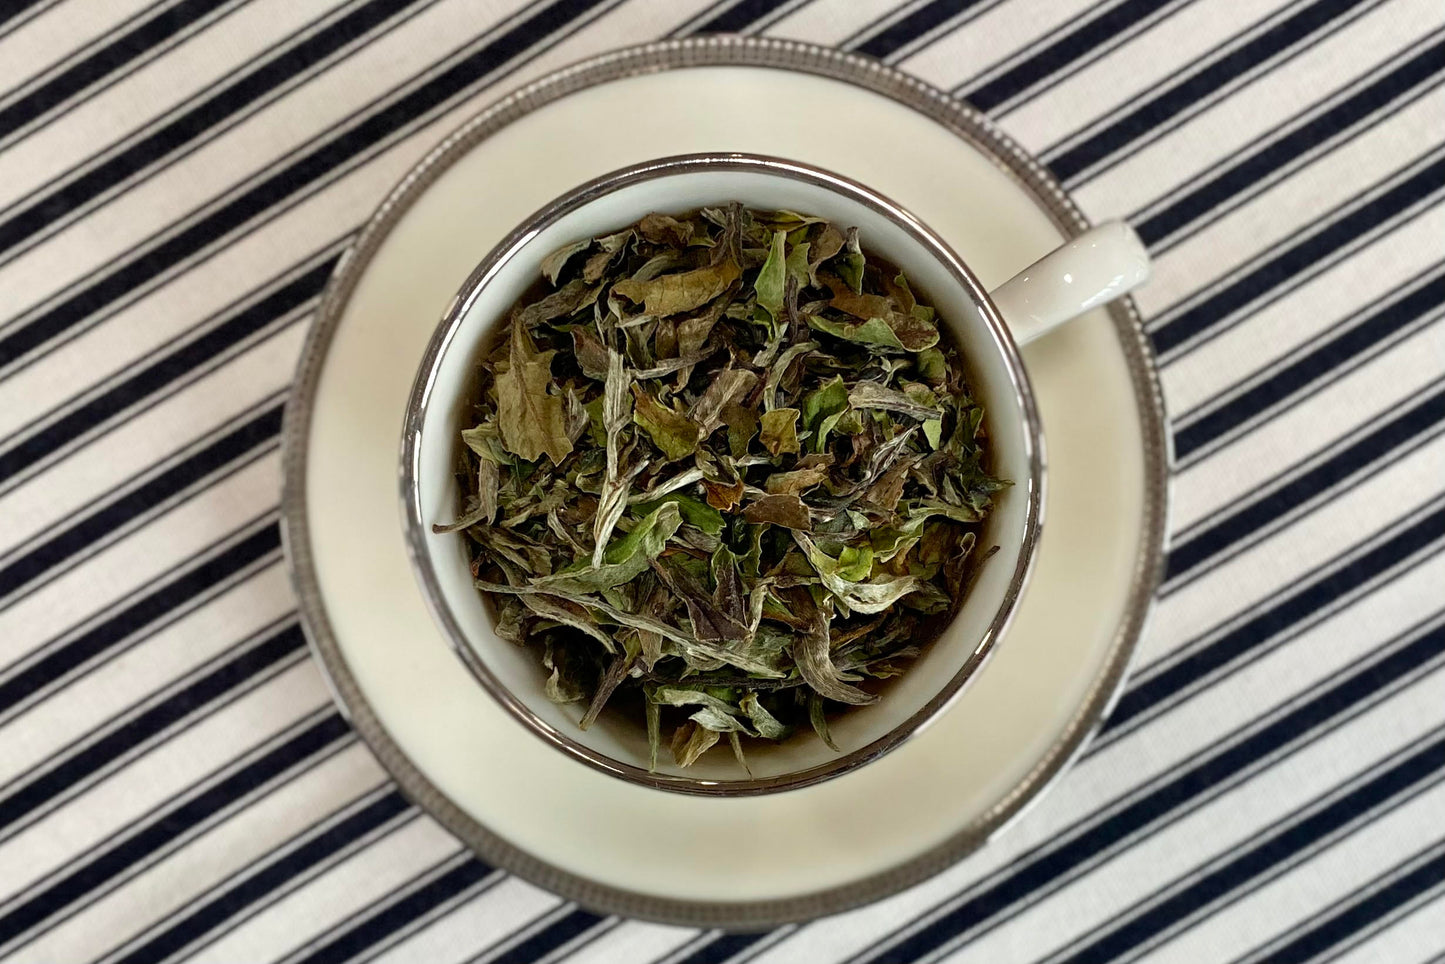 teacup full of white tea leaf